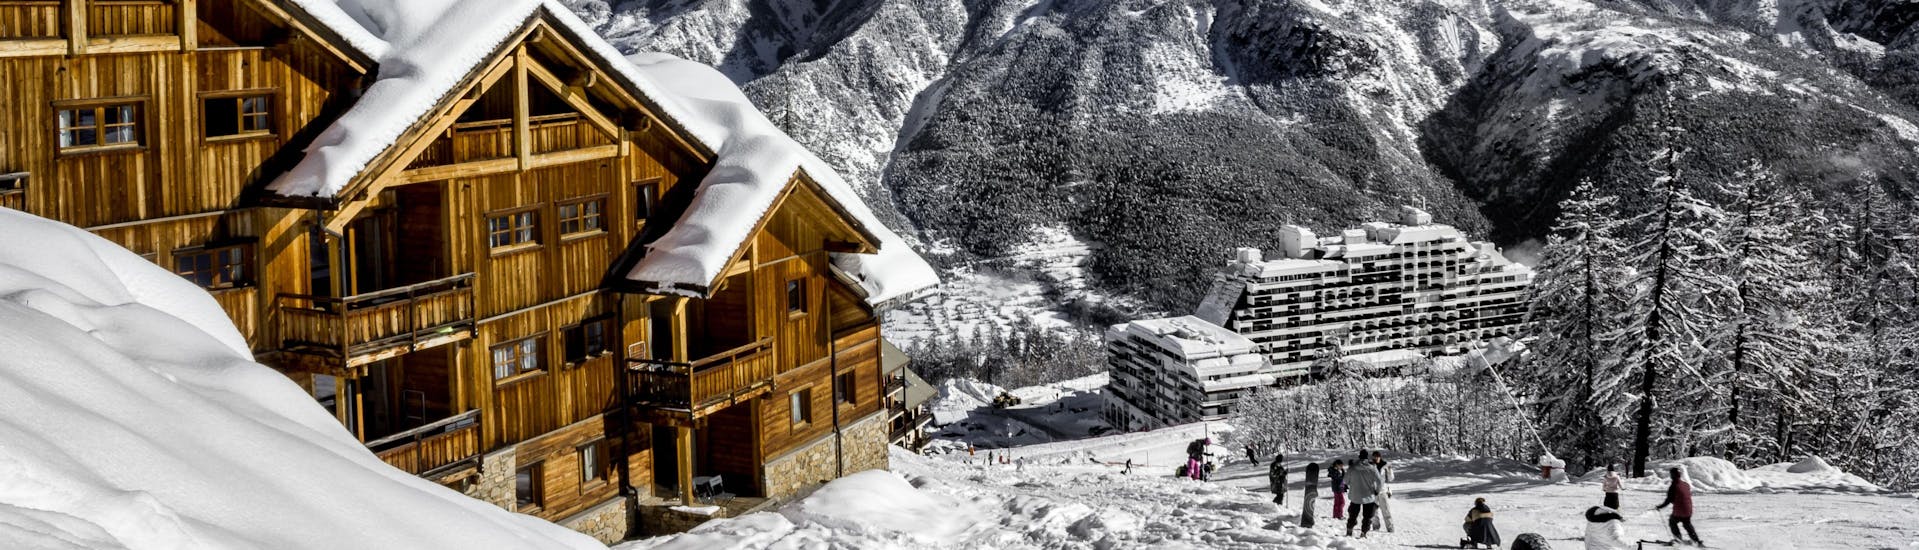 Une vue de la station de ski française de Puy Saint Vincent 1800 avec ses chalets en bois et ses pistes où les écoles de ski locales offrent un large éventail de cours de ski pour ceux qui veulent apprendre à skier.